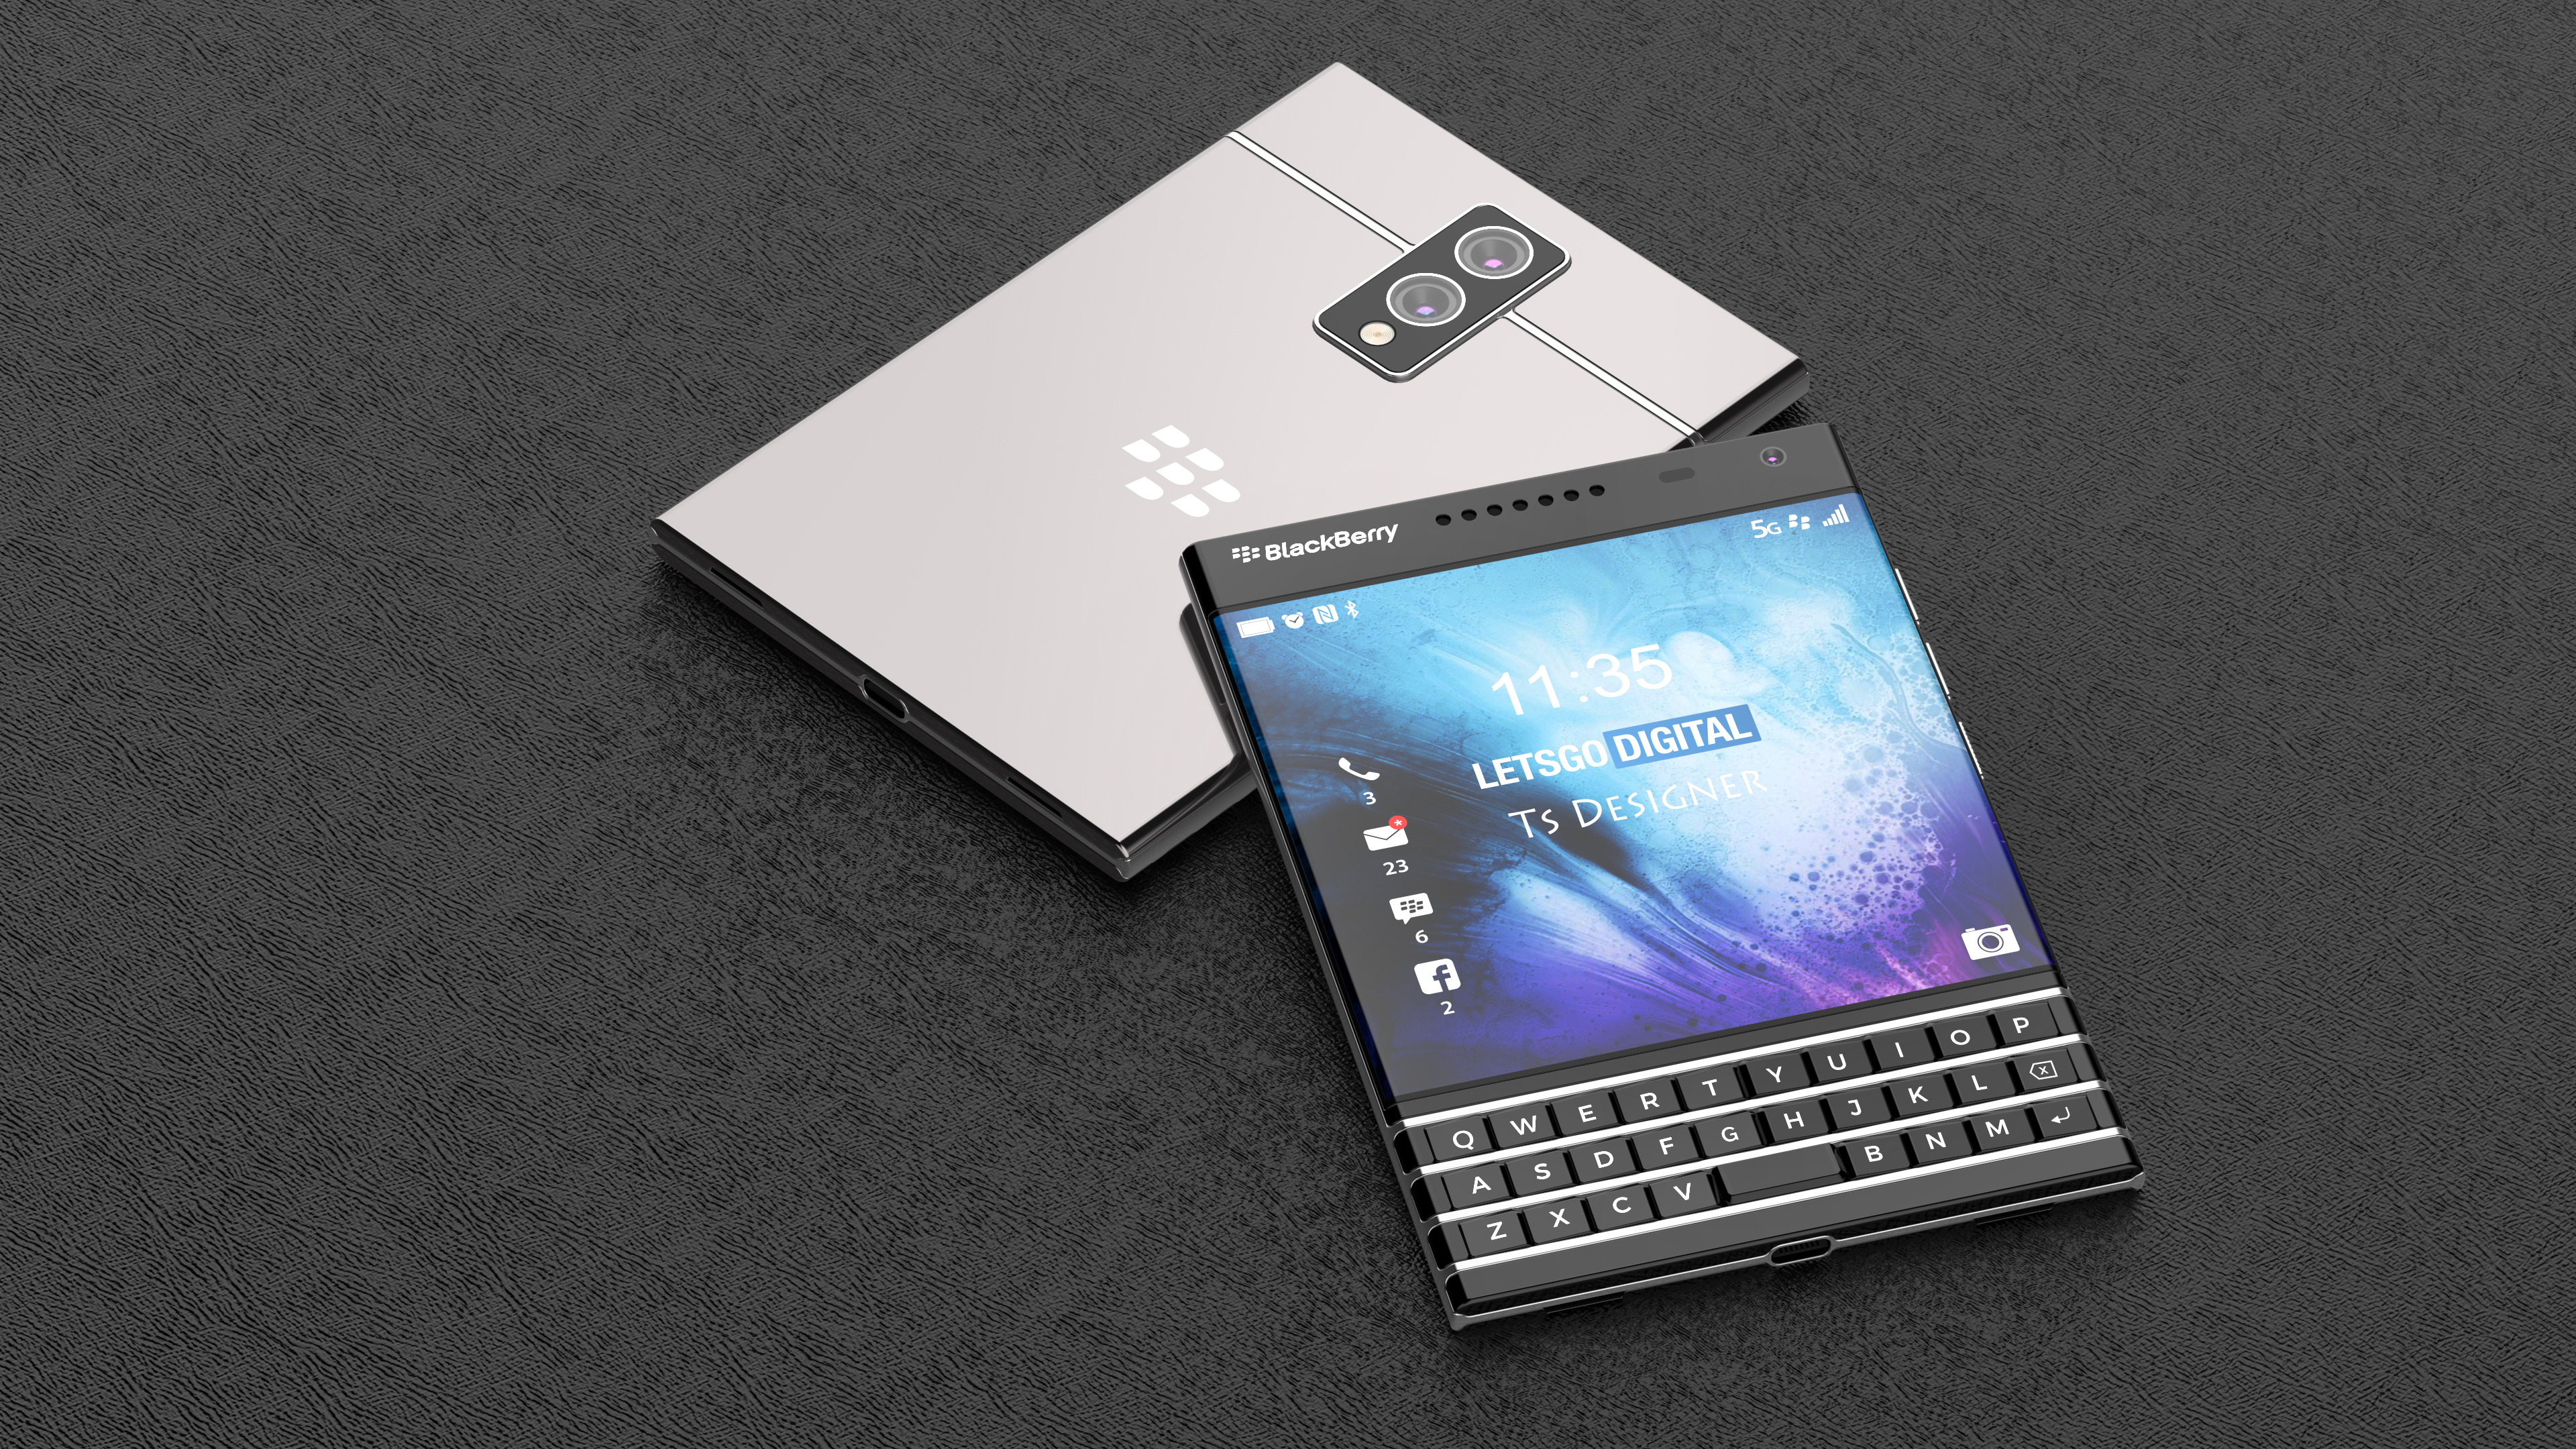 wimper Inspiratie Excursie BlackBerry Passport 2 5G telefoon met fysiek toetsenbord | LetsGoDigital